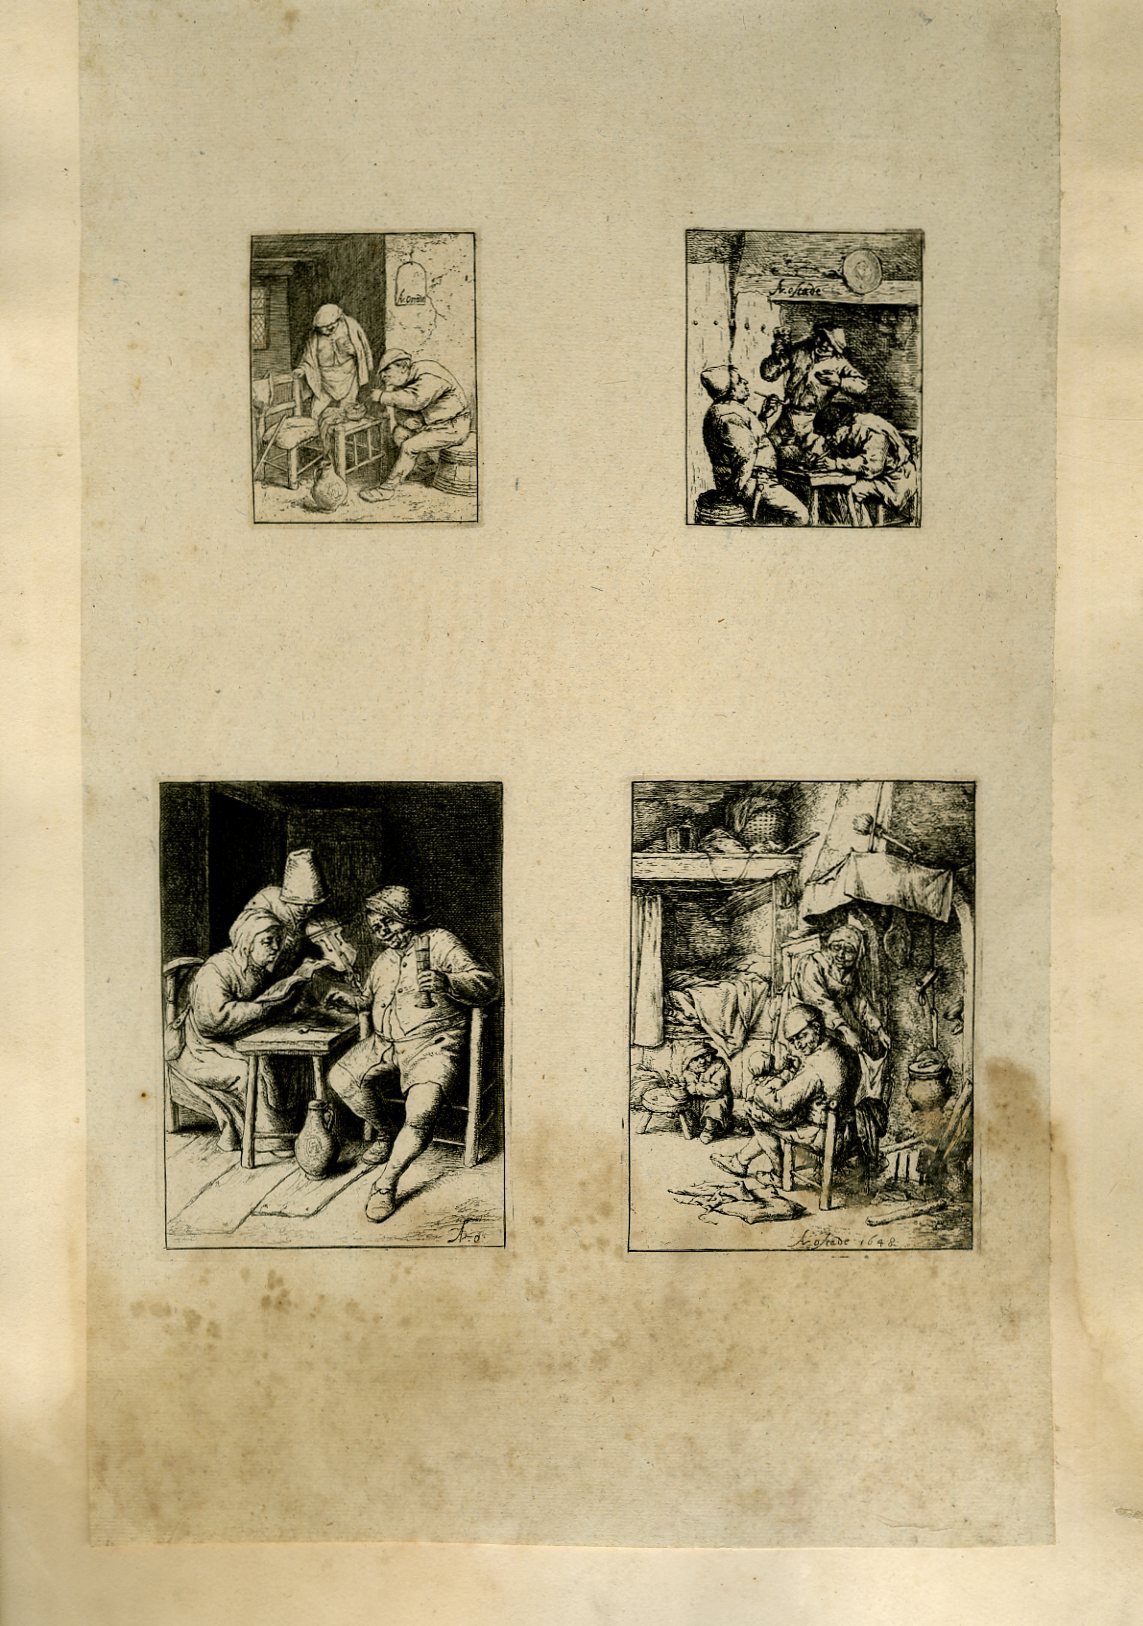 Planche illustre de 4 gravures originales en noir et blanc : Scnes de villageois durant leurs repas.